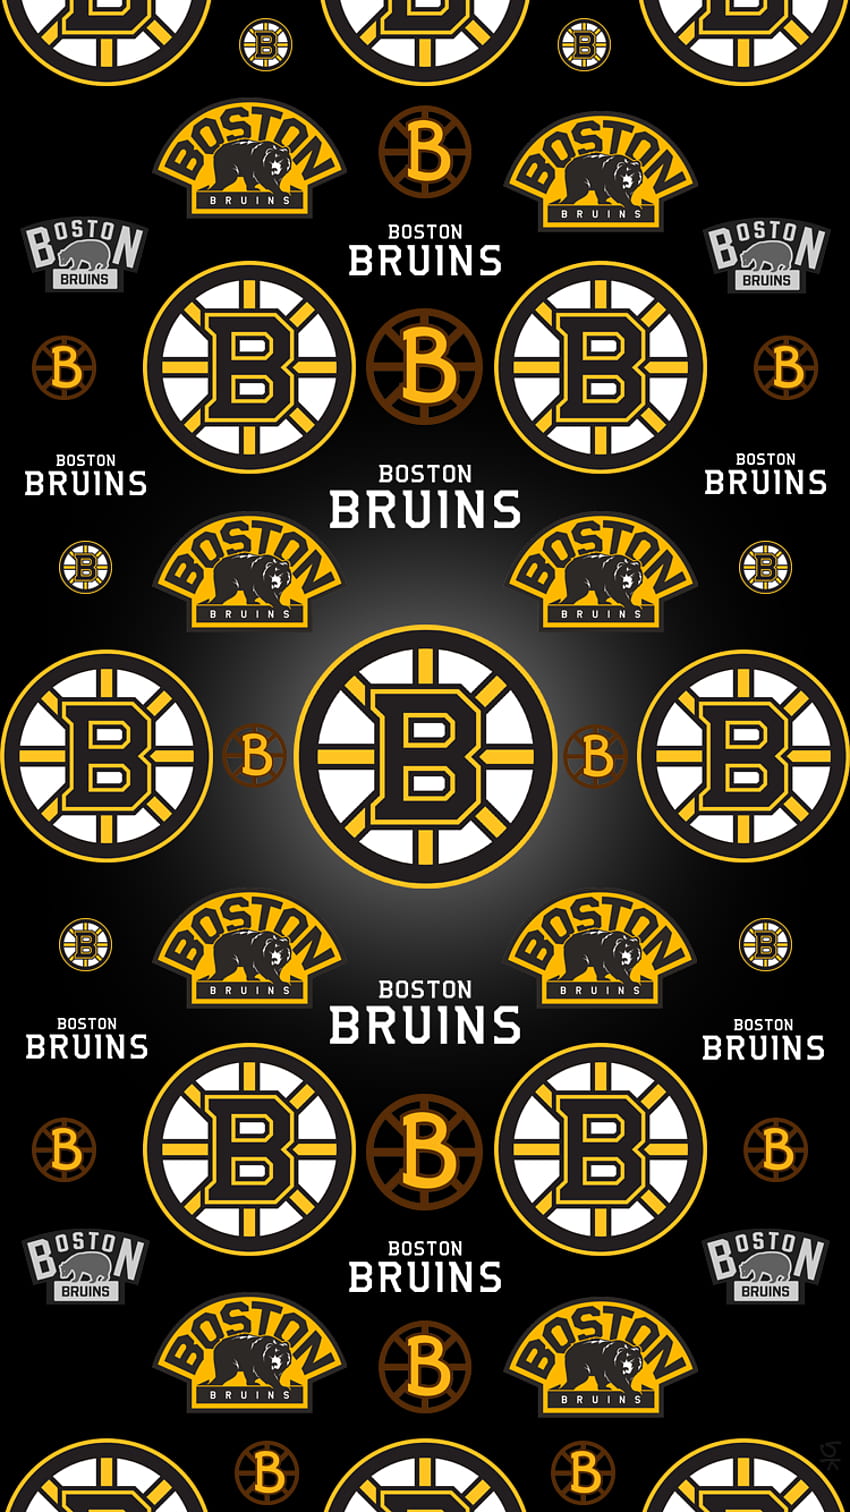 iPhone - iPhone 6 スポーツ スレッド。 ページ 187. MacRumors フォーラム。 ボストン・ブルーインズ、ボストン・ブルーインズ、ボストン・ホッケー、ボストン・ブルーインズ電話 HD電話の壁紙